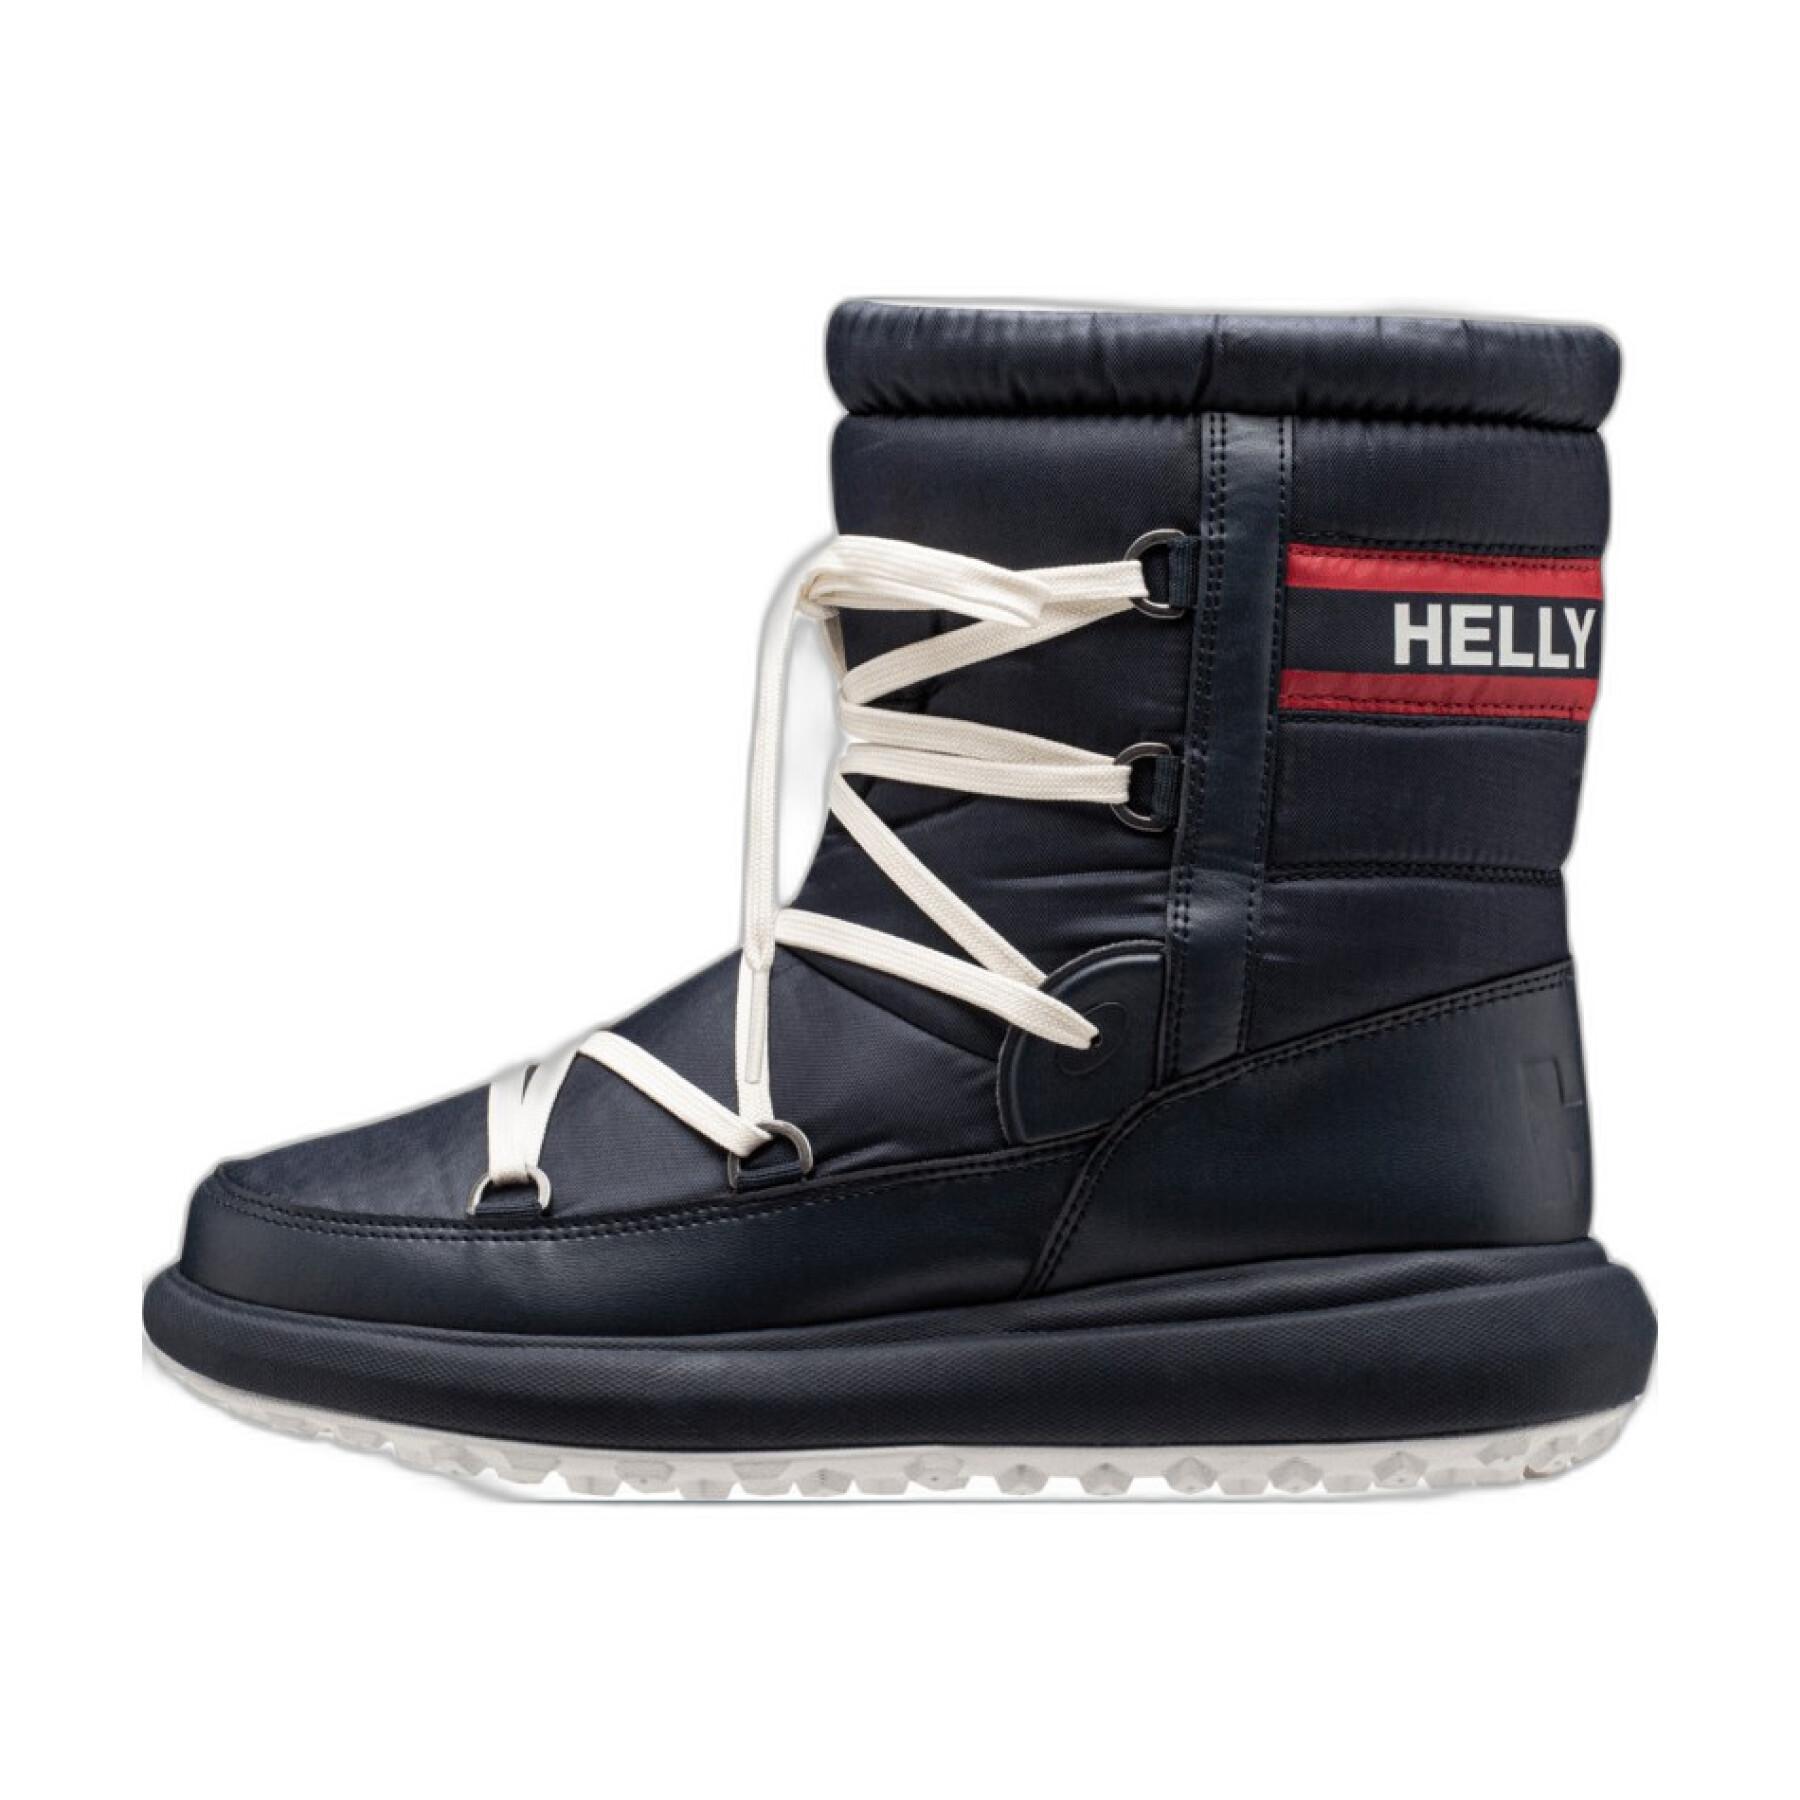 Krótkie śniegowe buty damskie Helly Hansen Isobella